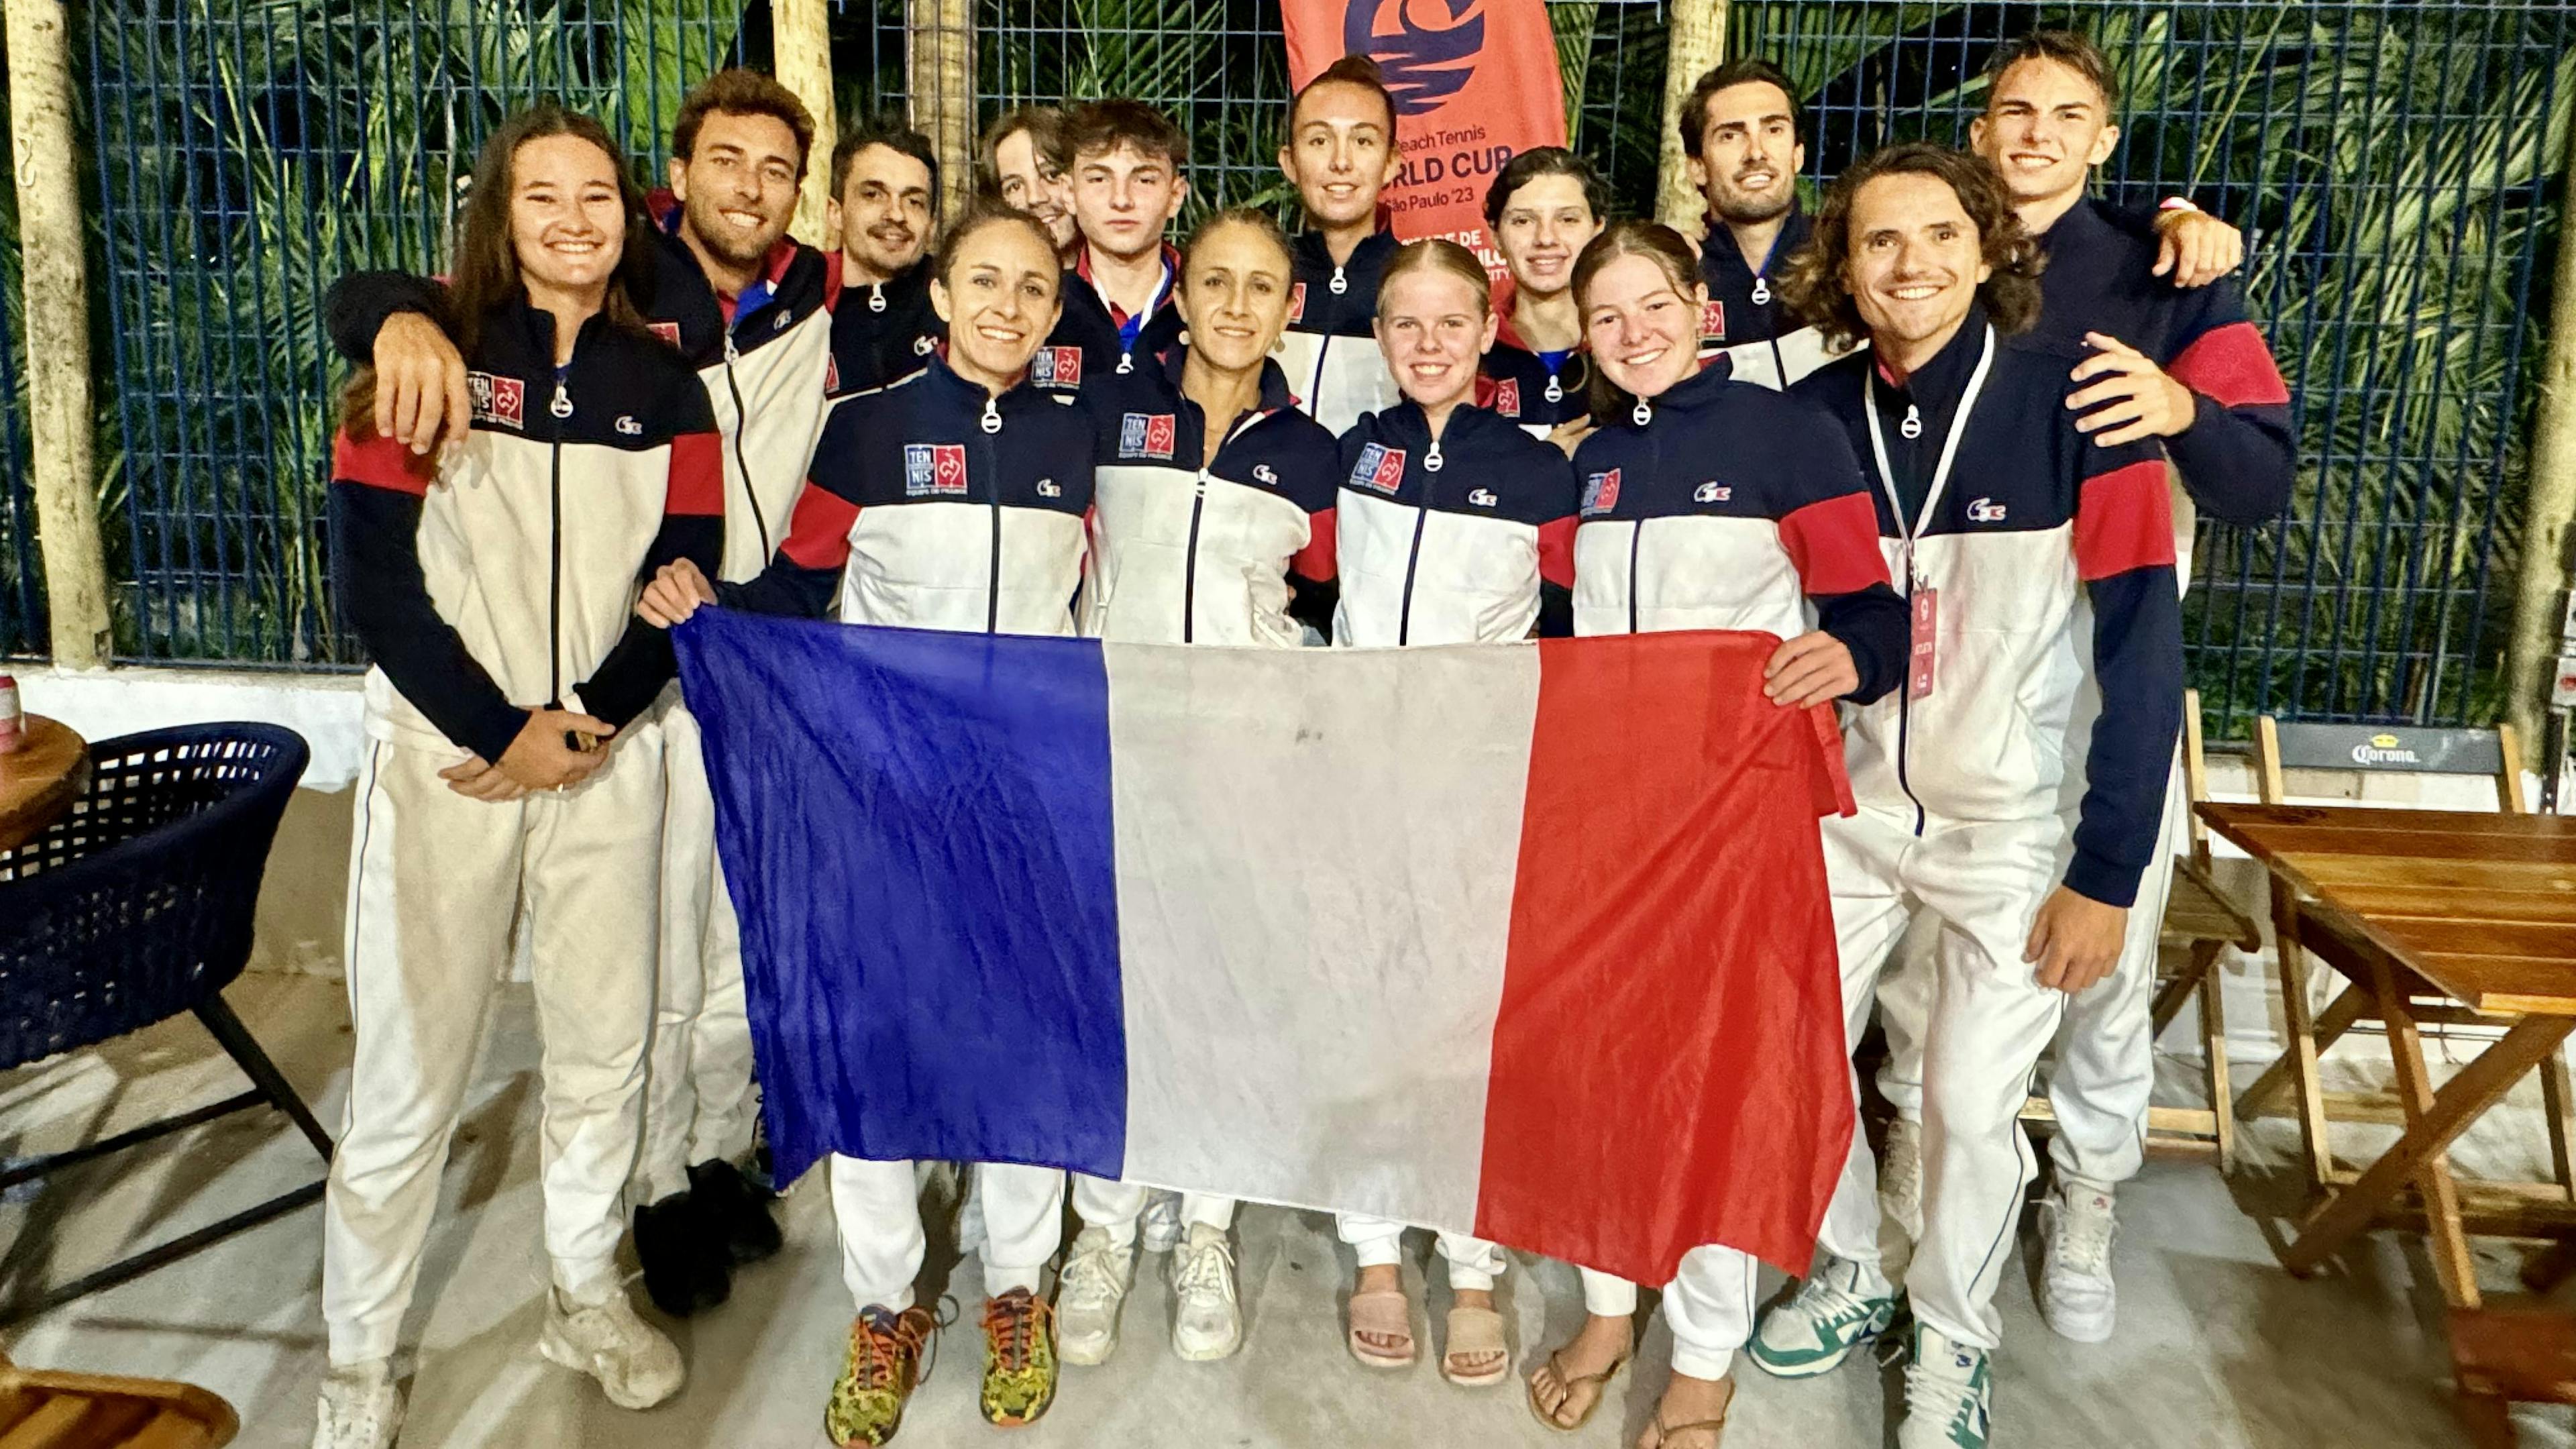 Une équipe de France unie derrière le drapeau.